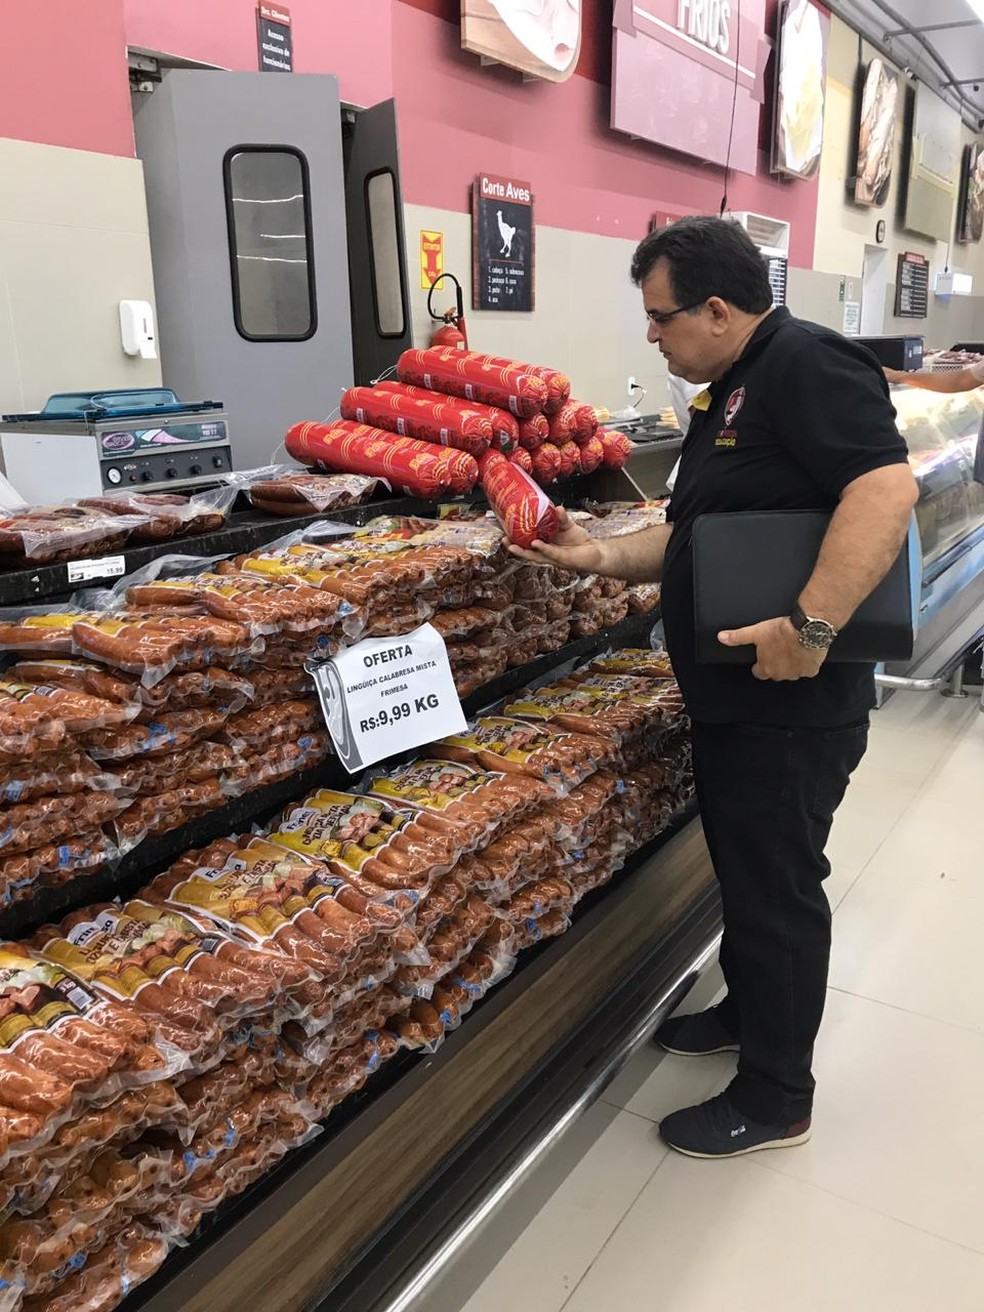 Ministério Público e a Vigilância Sanitária apreenderam mais de uma tonelada de carne impropria para consumo em Parnaíba — Foto: Divulgação/Ministério Público 